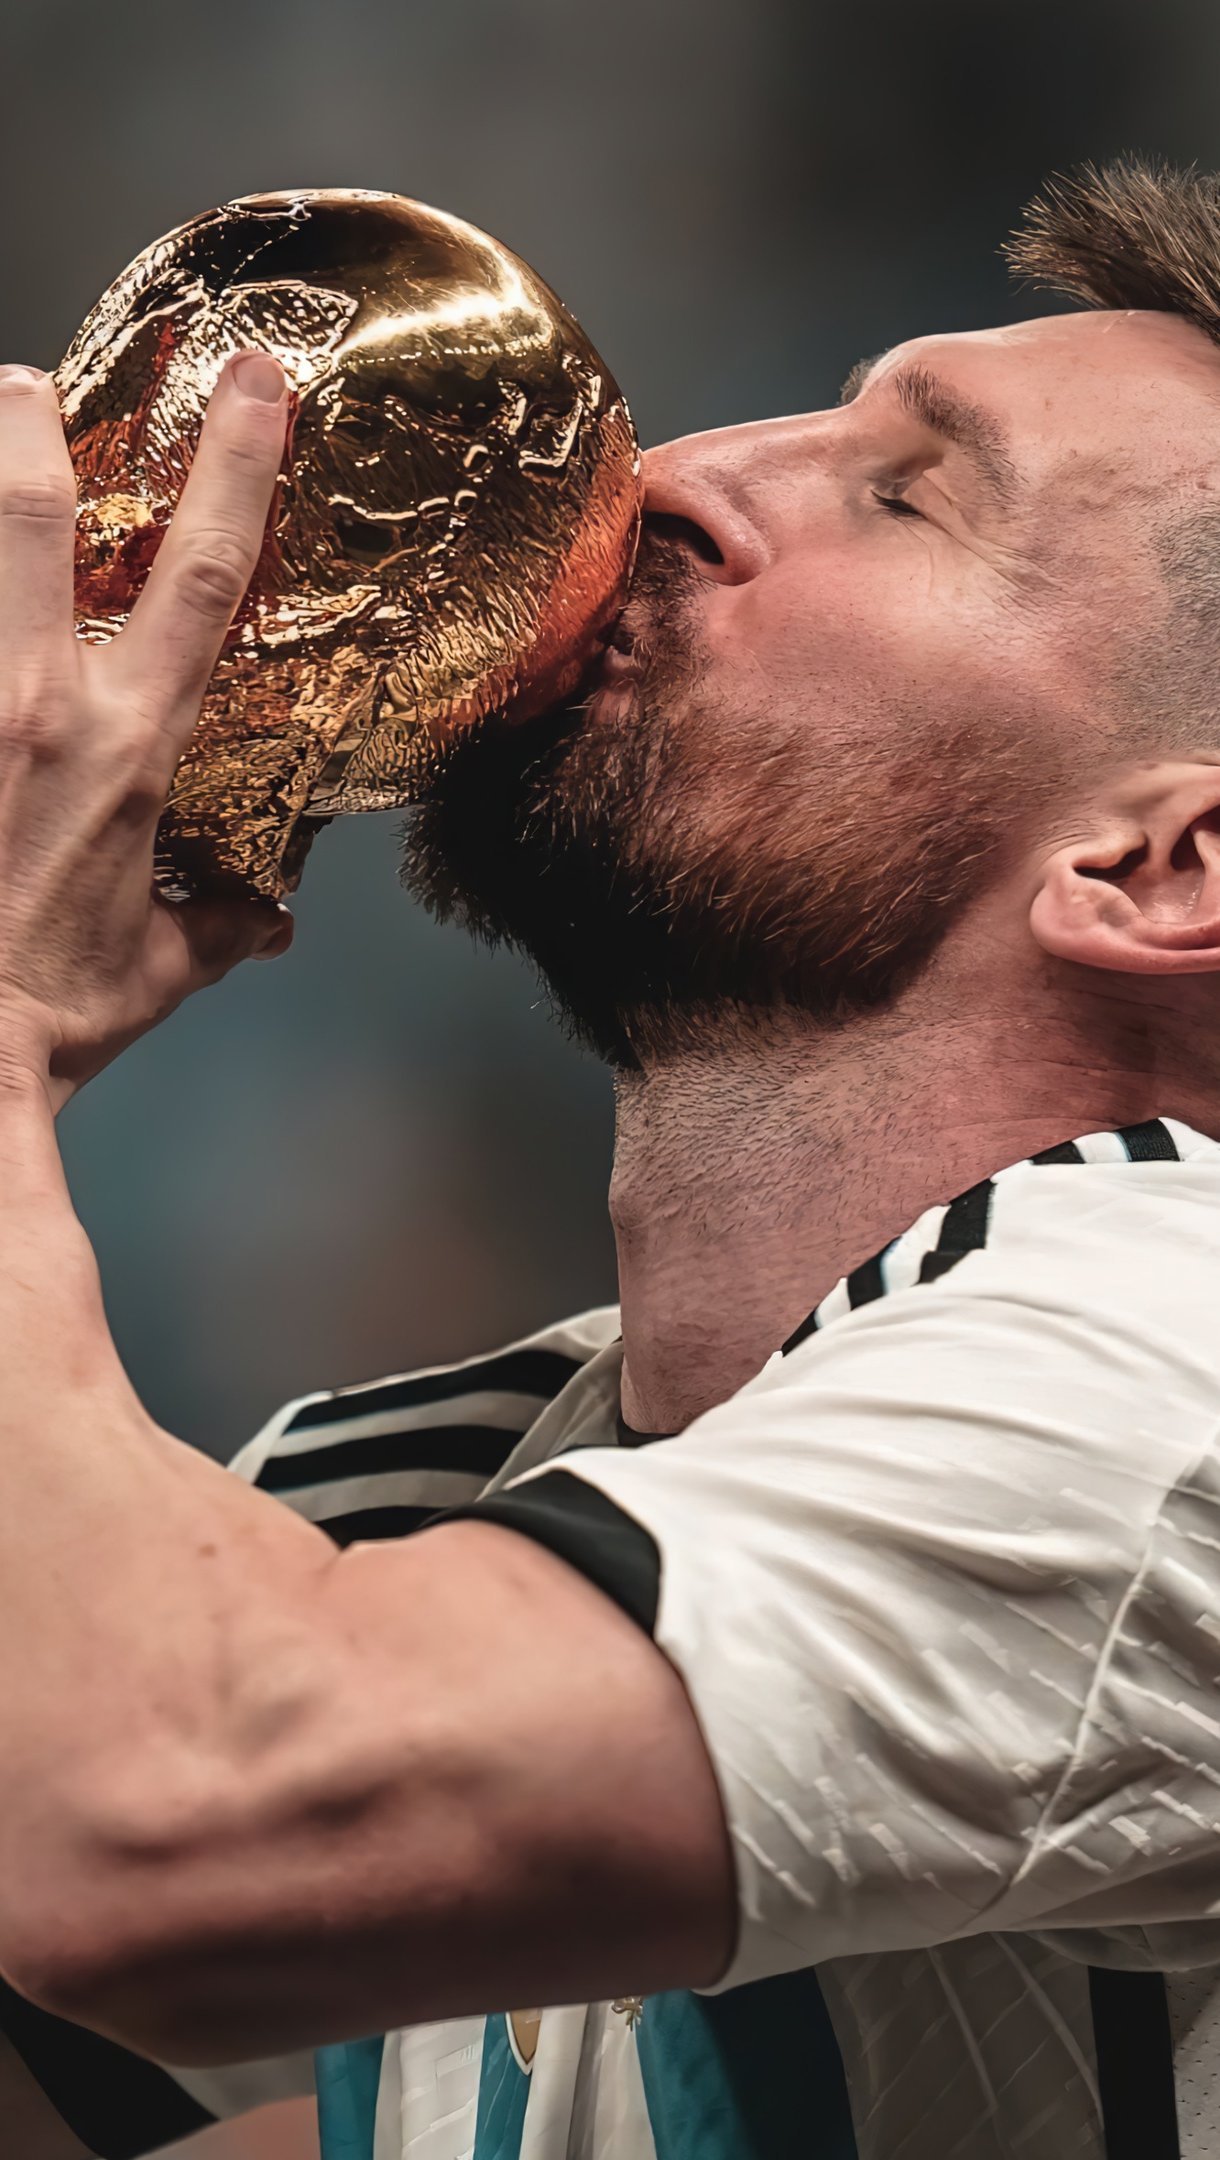 Không thể bỏ lỡ bức ảnh Messi cầm trên tay chiếc cúp vàng World Cup, giúp người xem tận hưởng cảm giác khát khao chiến thắng của một ngôi sao đích thực.